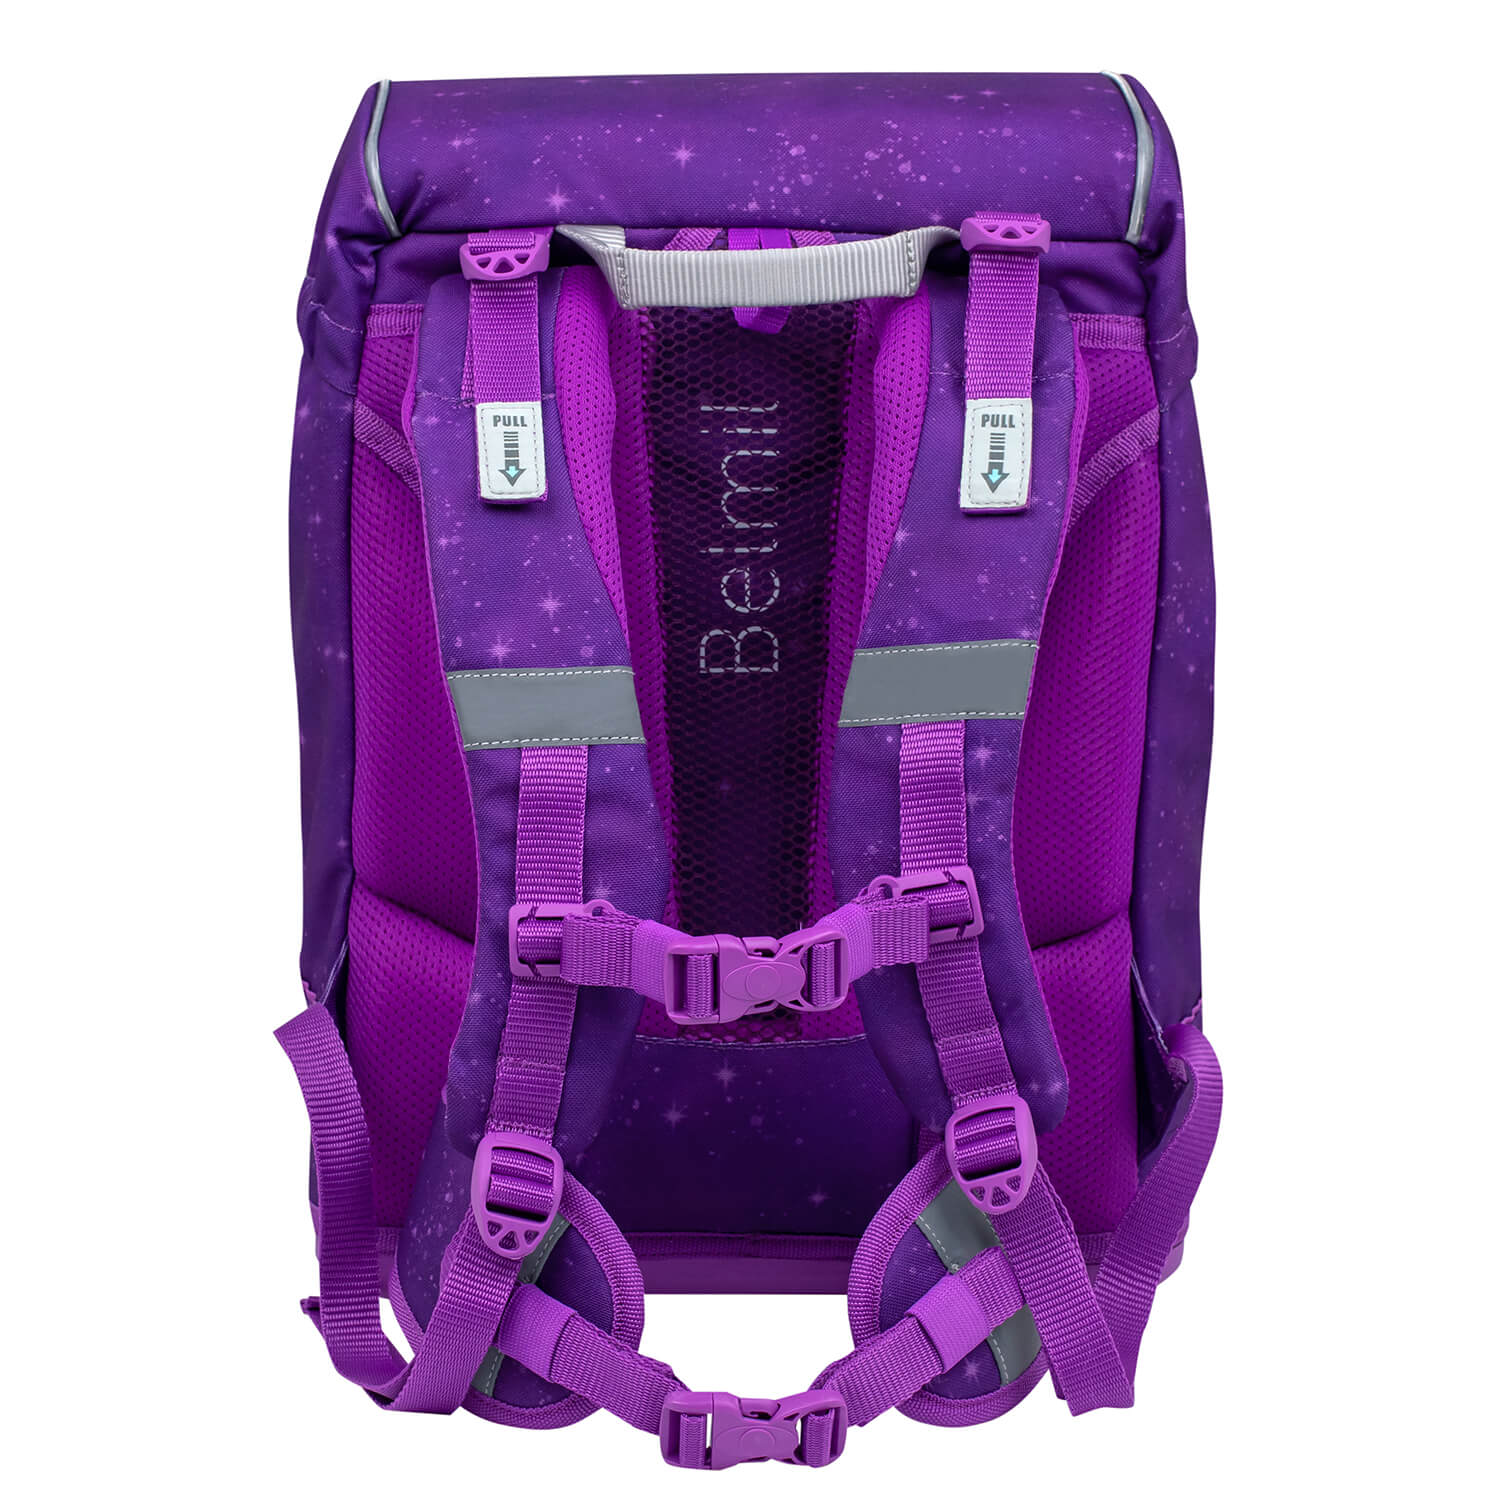 Motion Purple Sky schoolbag set 5 pcs